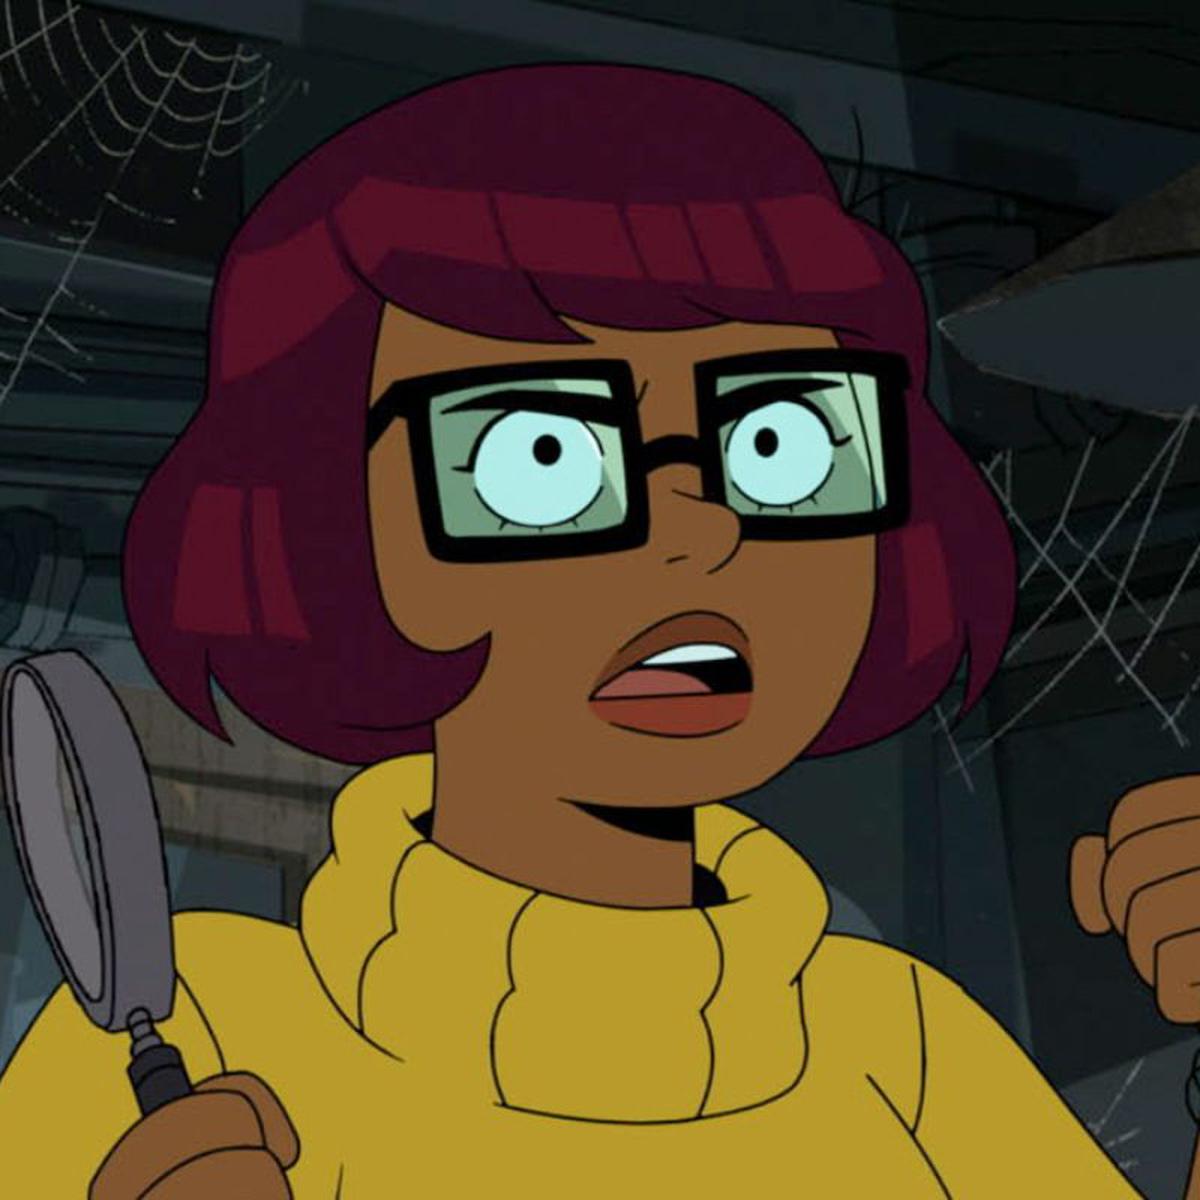 Velma, da HBO Max, conta-nos a origem da personagem de Scooby-Doo